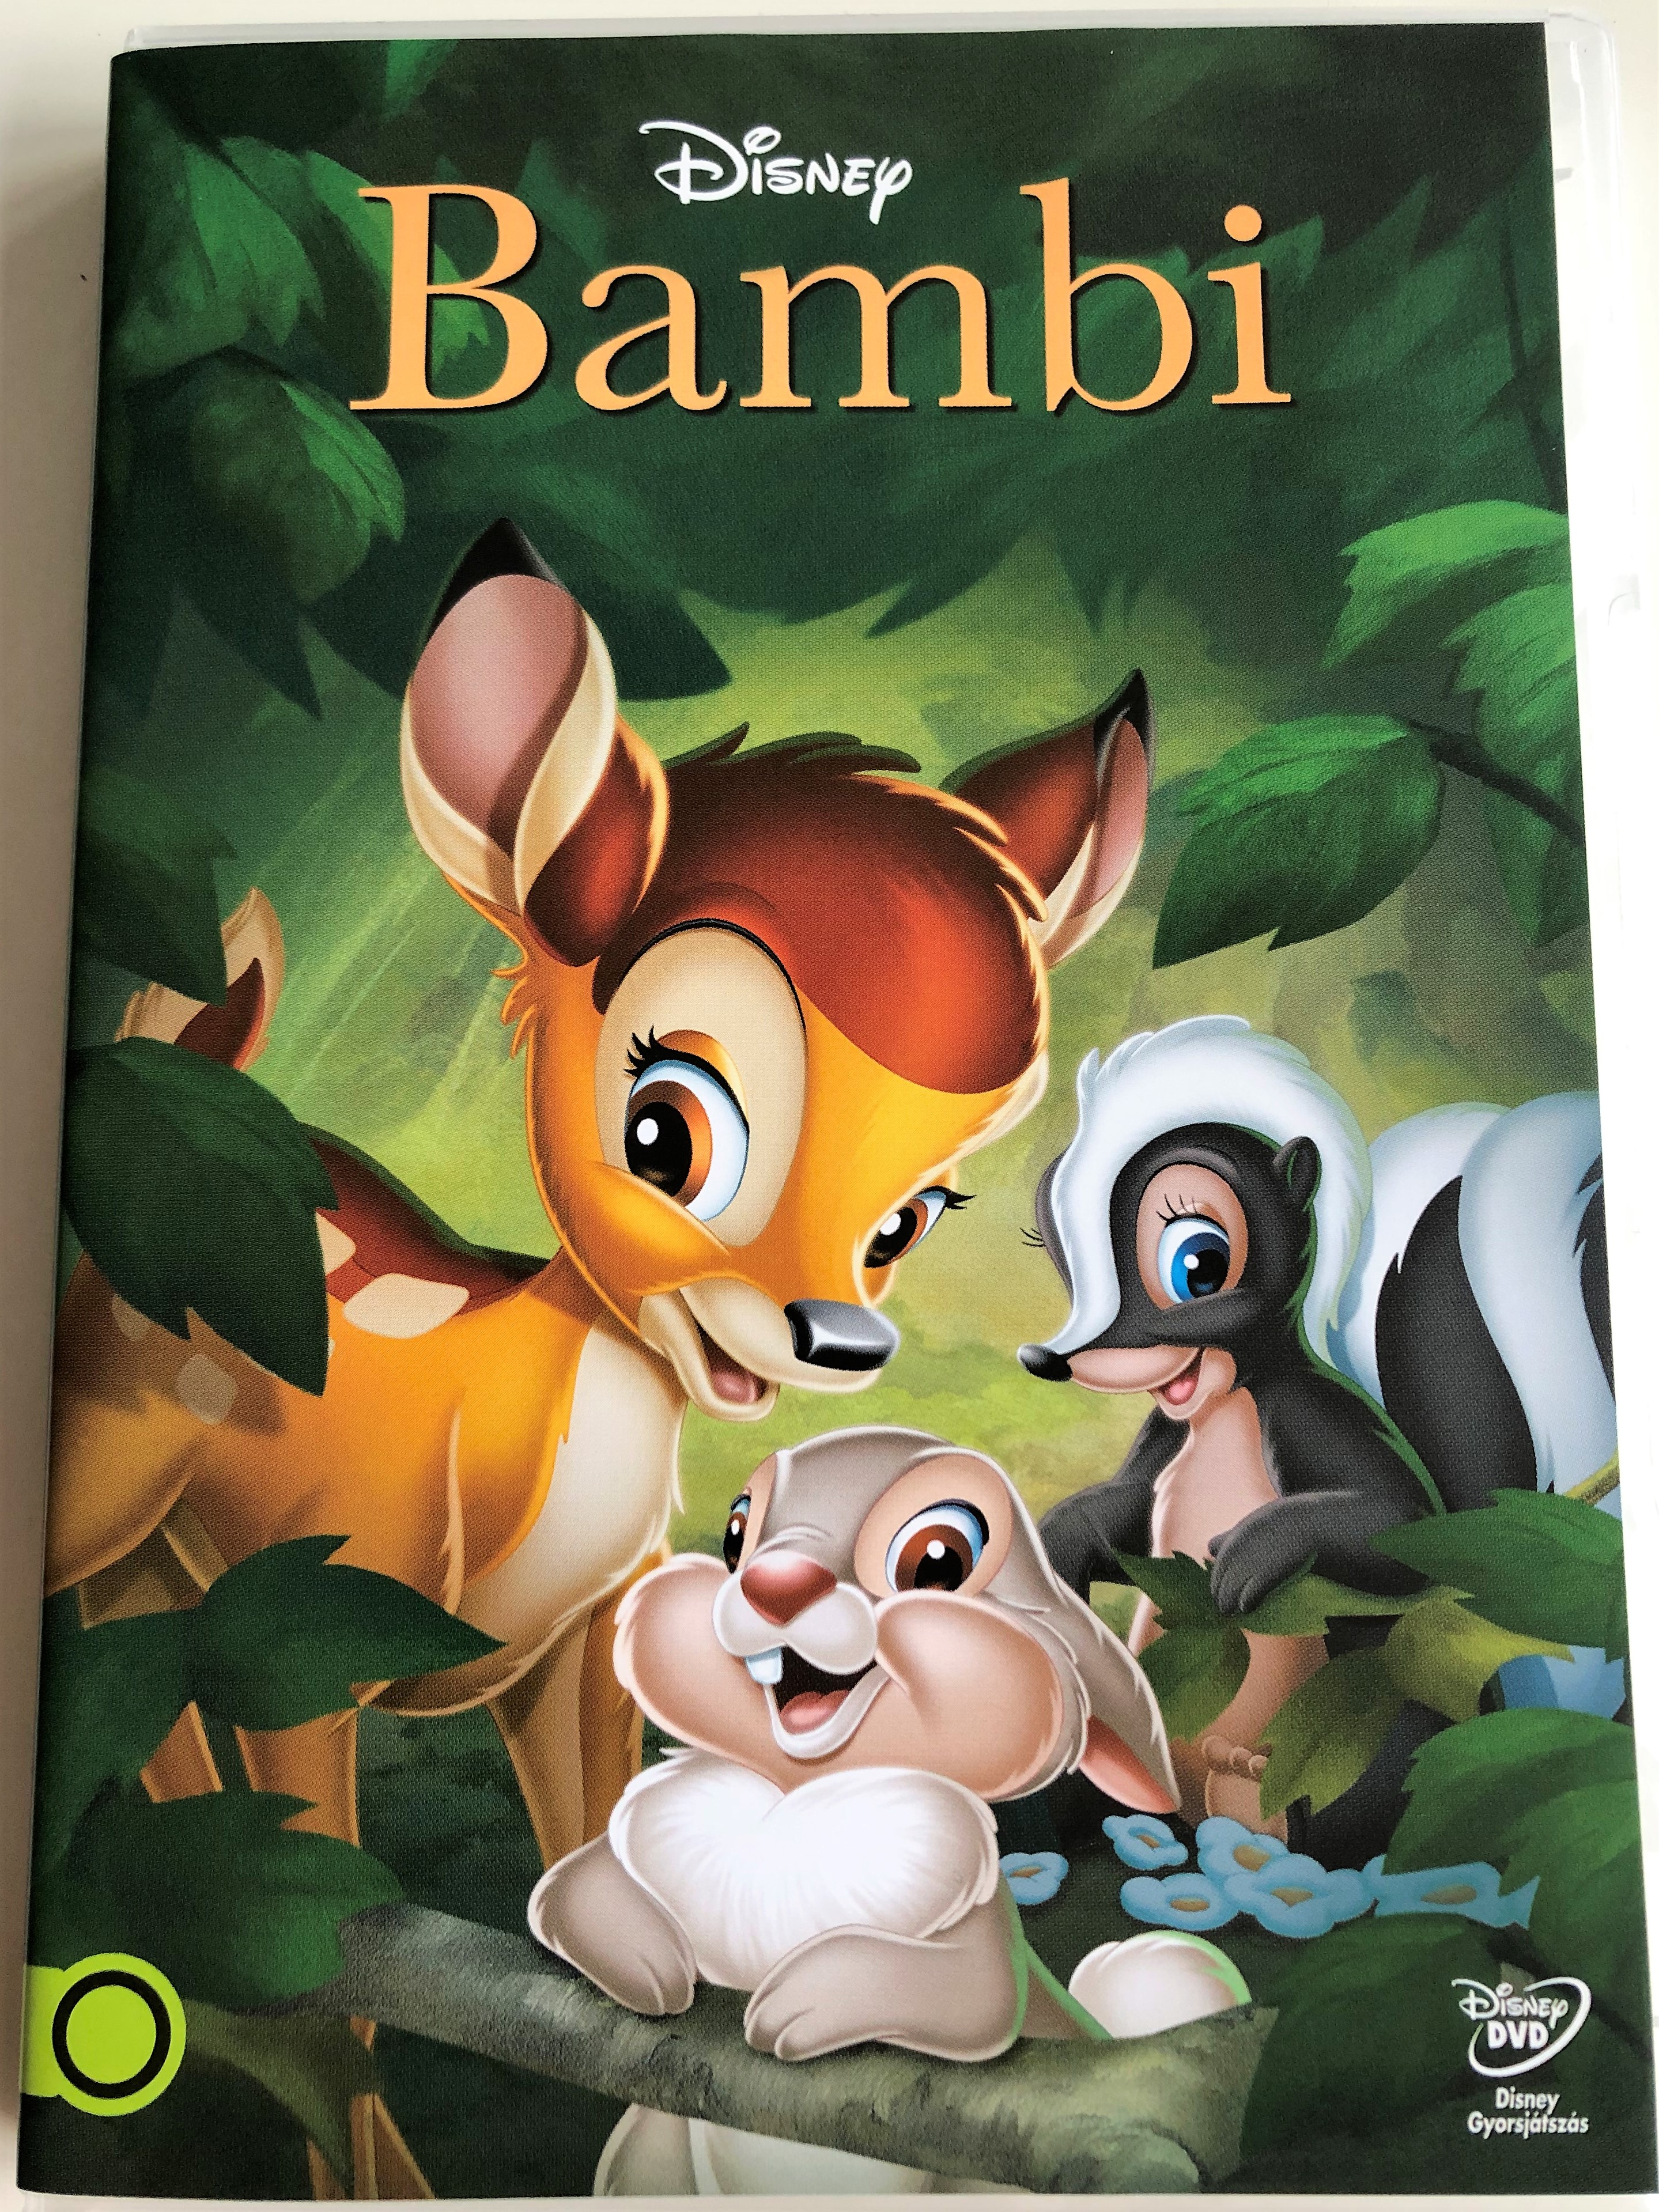 bambi-dvd-1942-walt-disney-directed-by-david-hand-james-algar-based-on-felix-salten-s-novel-2013-release-1-.jpg